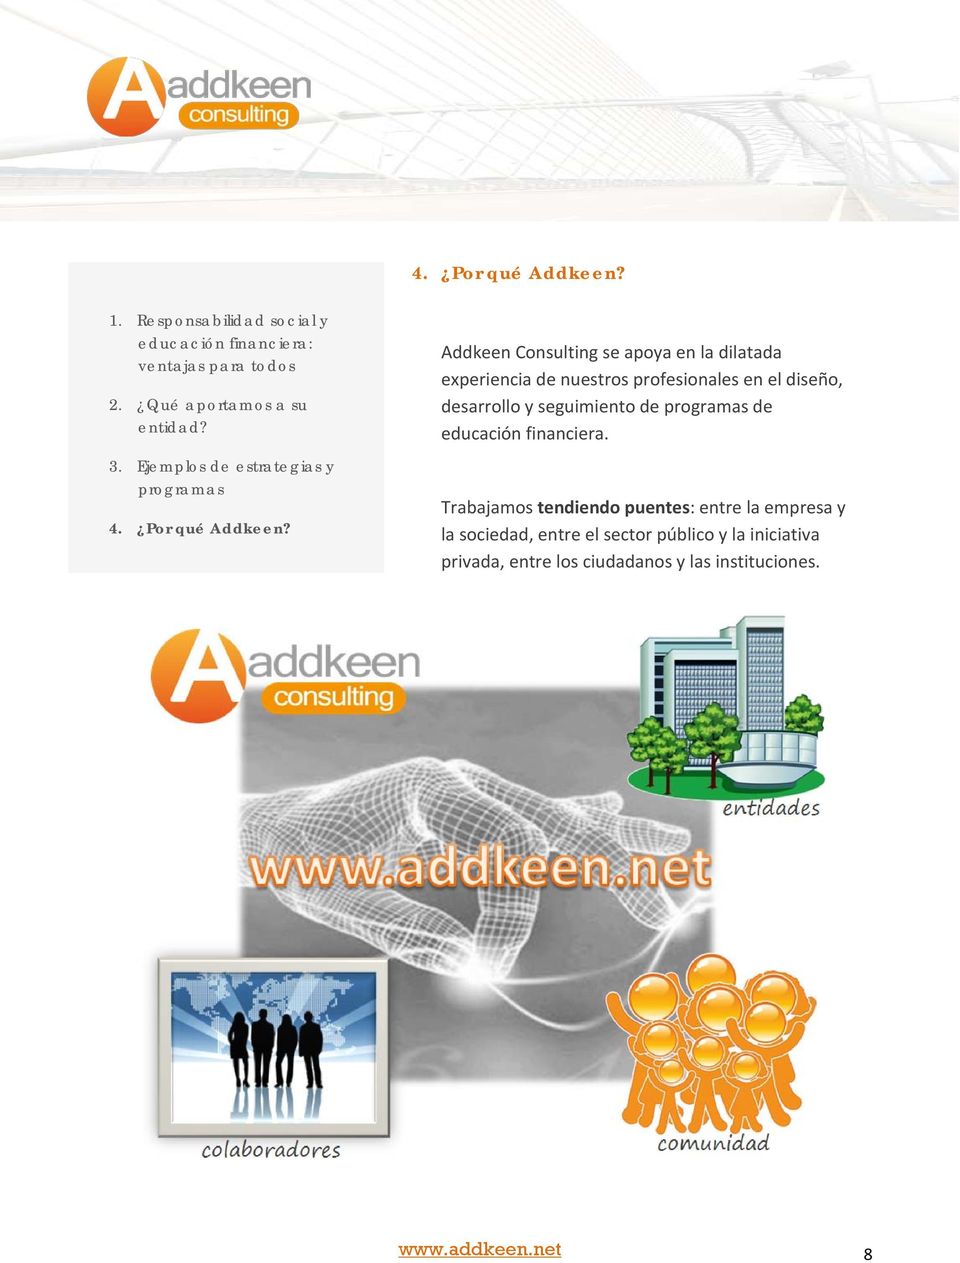 Addkeen Consulting se apoya en la dilatada experiencia de nuestros profesionales en el diseño, desarrollo y seguimiento de